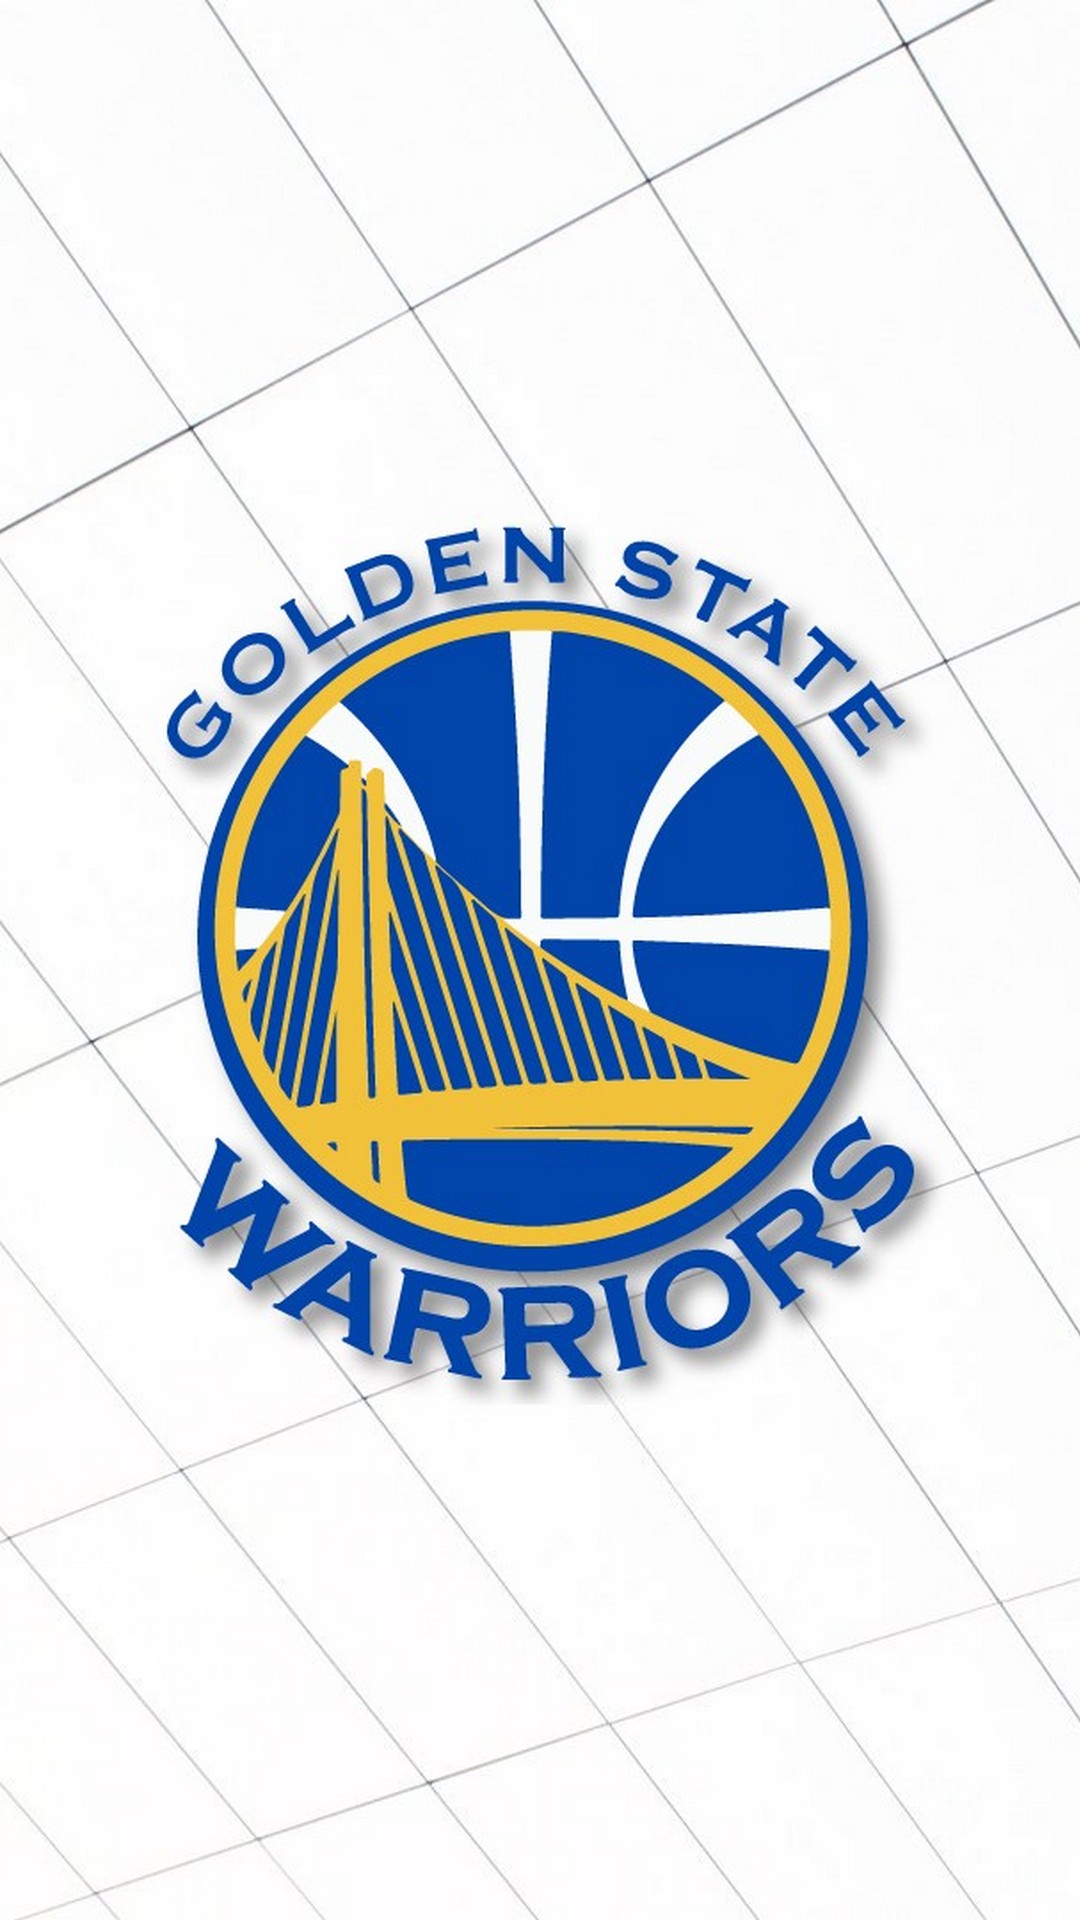 Golden State Warriors Phone Wallpaper